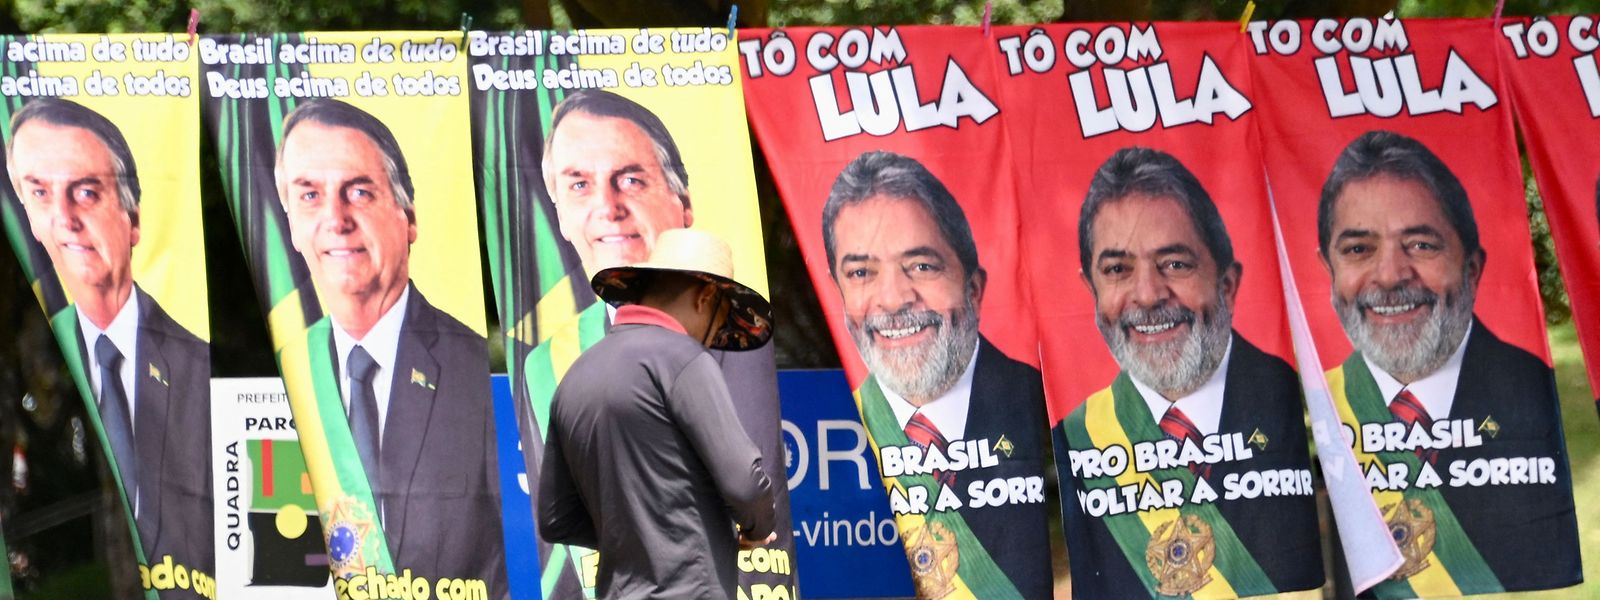 In den jüngsten Umfragen baute Ex-Präsident Lula von der linken Arbeiterpartei PT seinen Vorsprung weiter aus. Er würde demnach in der ersten Wahlrunde auf 50 Prozent der Stimmen kommen, Bolsonaro gerade mal auf 36 Prozent. 